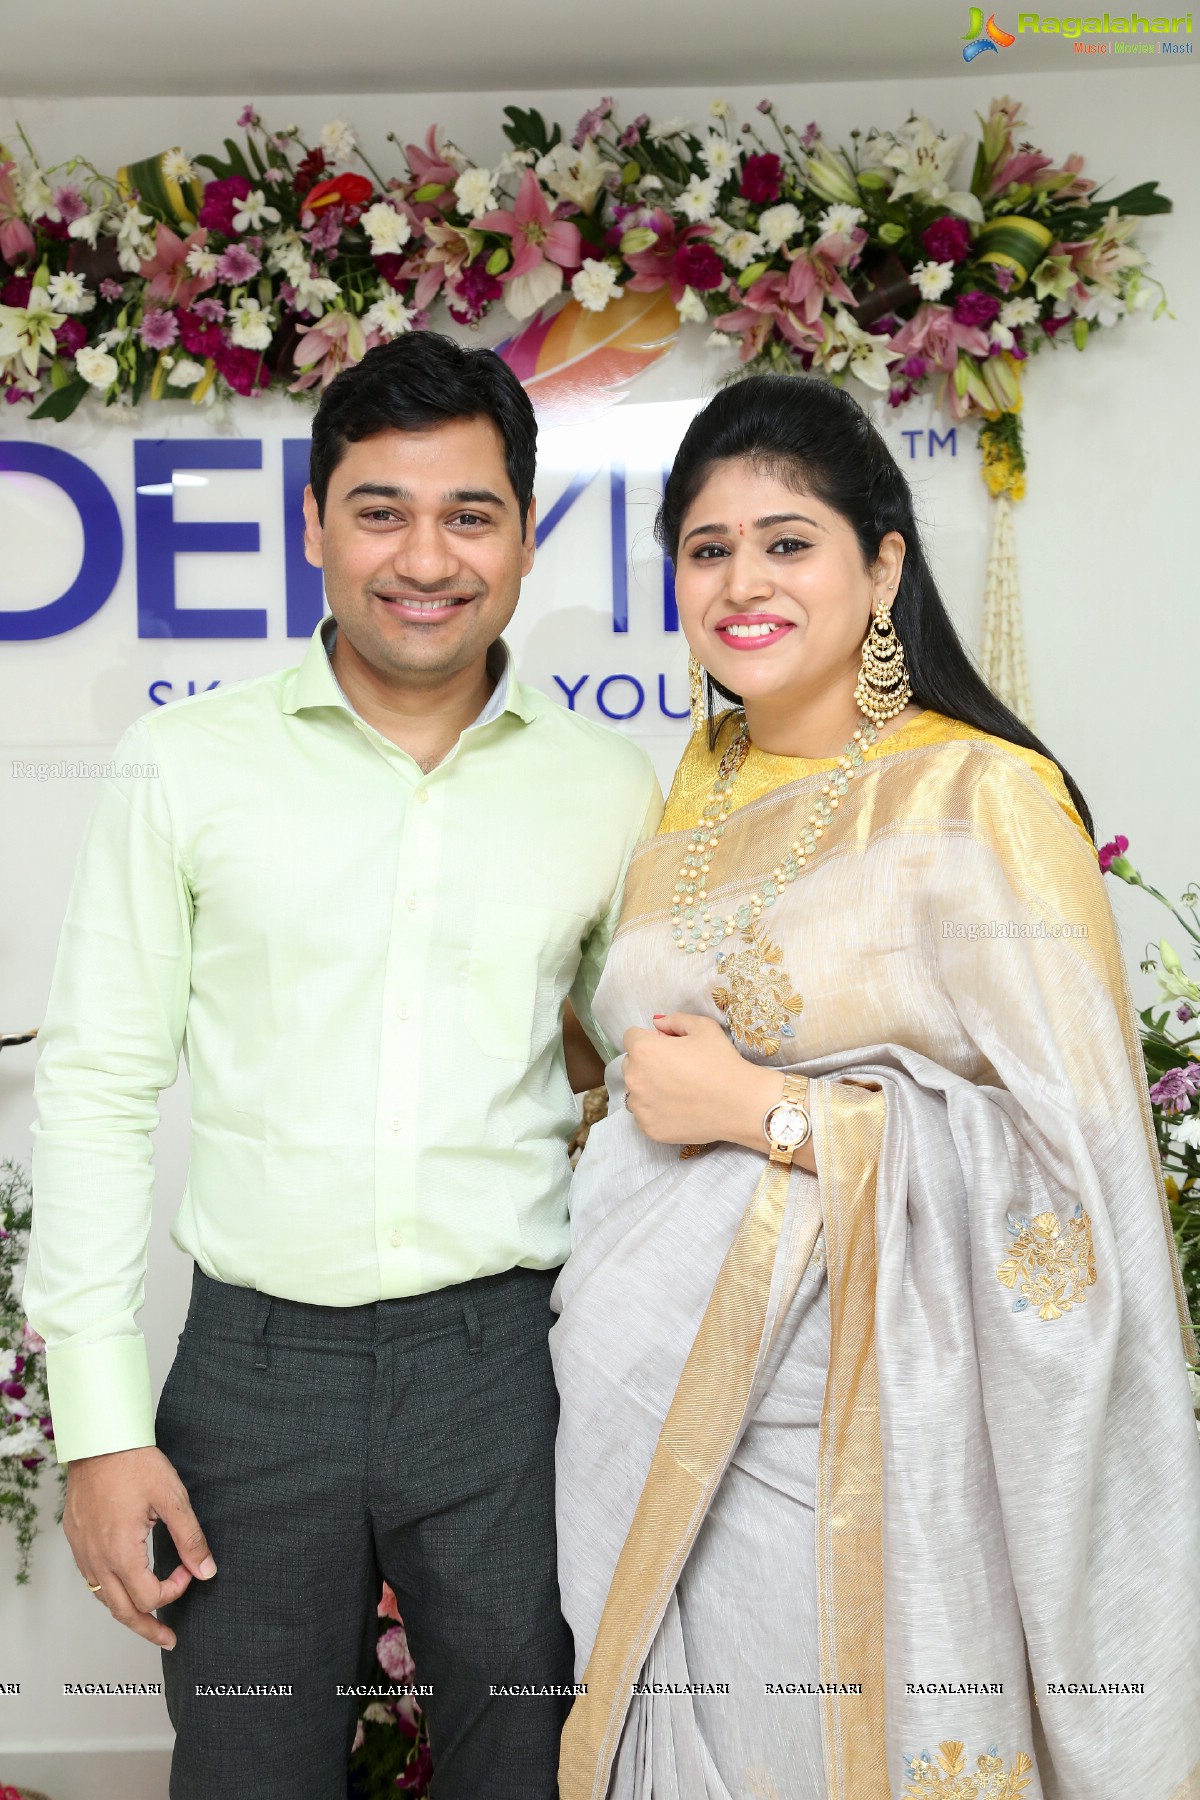 DERMIQ Cosmetic Clinic Launch by Omkar, Divyansha Kaushik & Sunaina at Kondapur